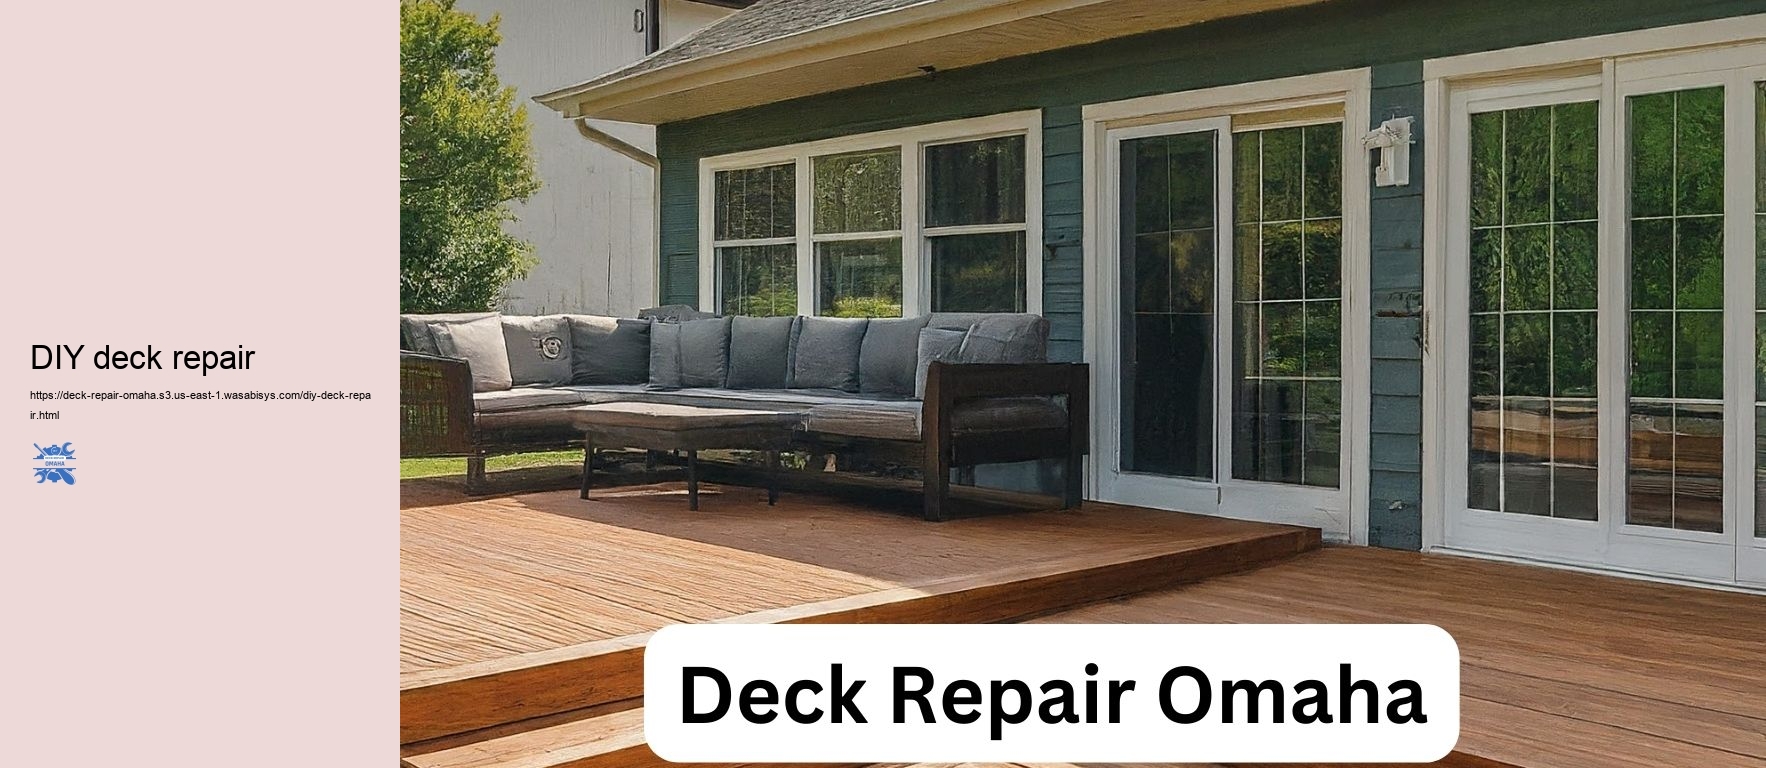 DIY deck repair